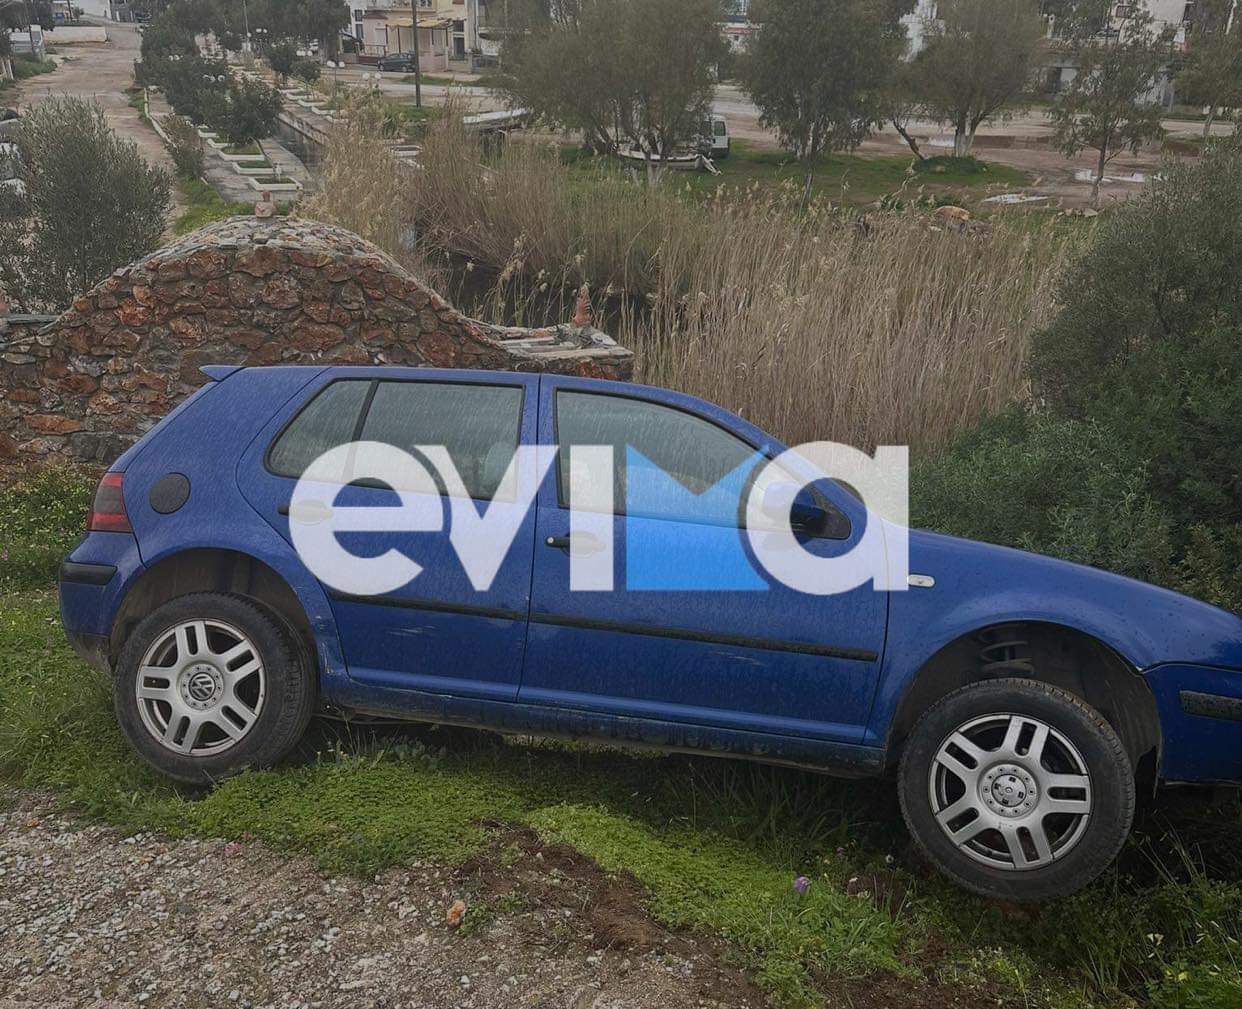 Τροχαίο στην Εύβοια: Οδηγός ΙΧ έχασε τον έλεγχο και έπεσε στον γκρεμό